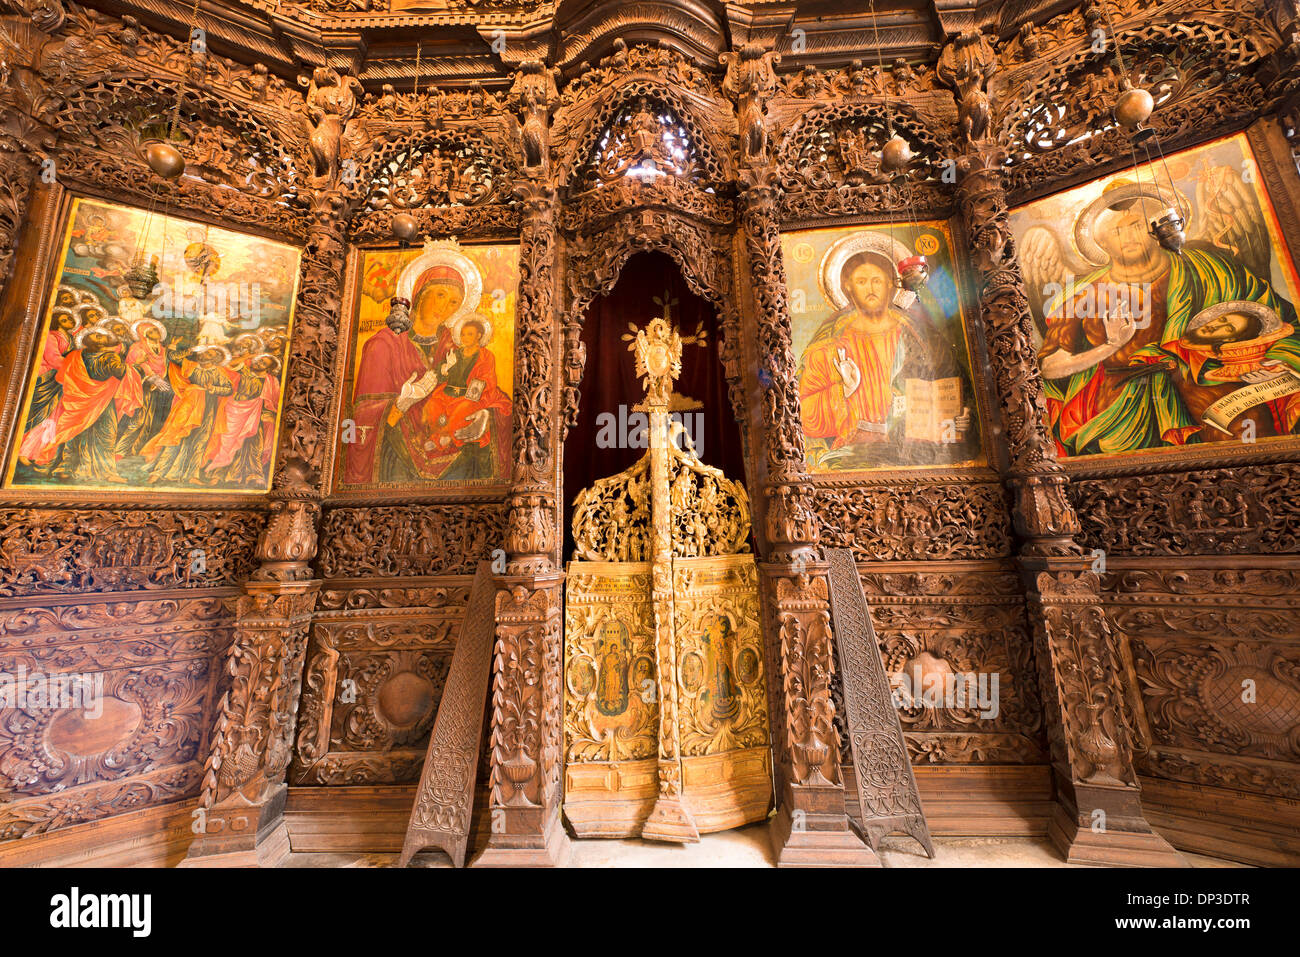 Chiesa di Saint Spas Skopje Macedonia regione dei Balcani Occidentali Europa affreschi e iconostasi scolpita sculture in legno del XVII secolo Foto Stock